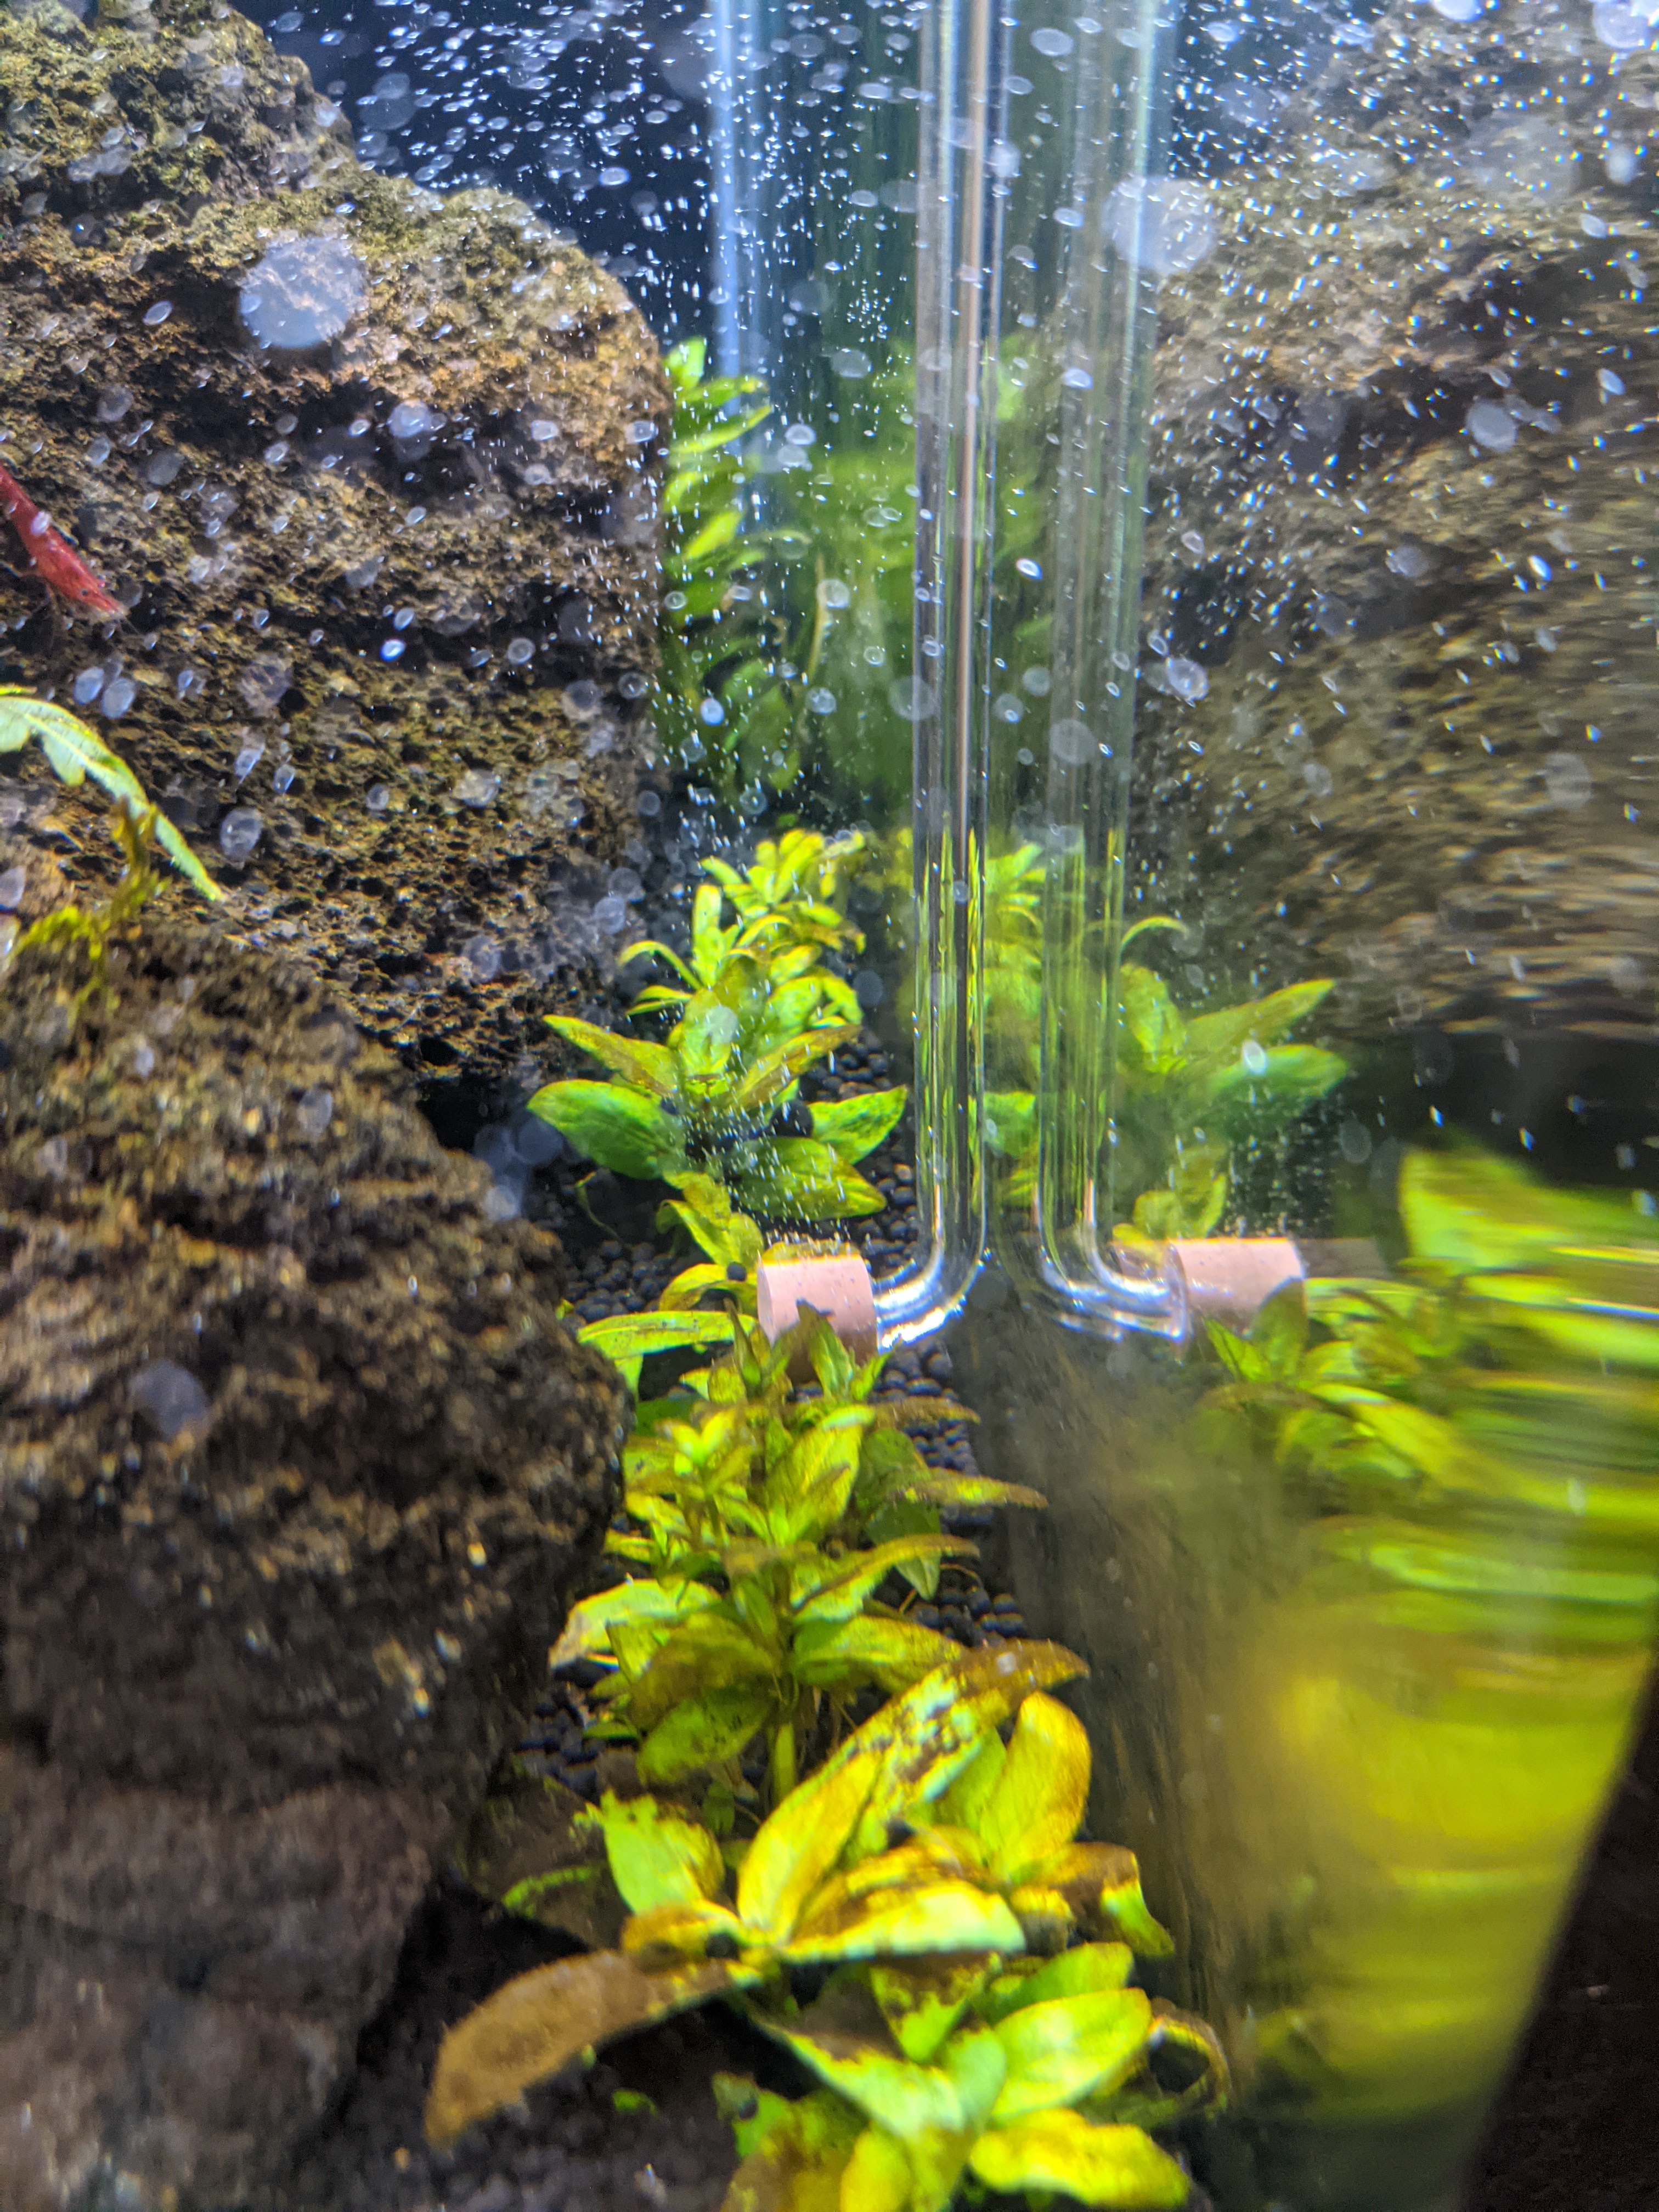 Aquarium Filter Lily Pipes: Aquario Neo Skimmer